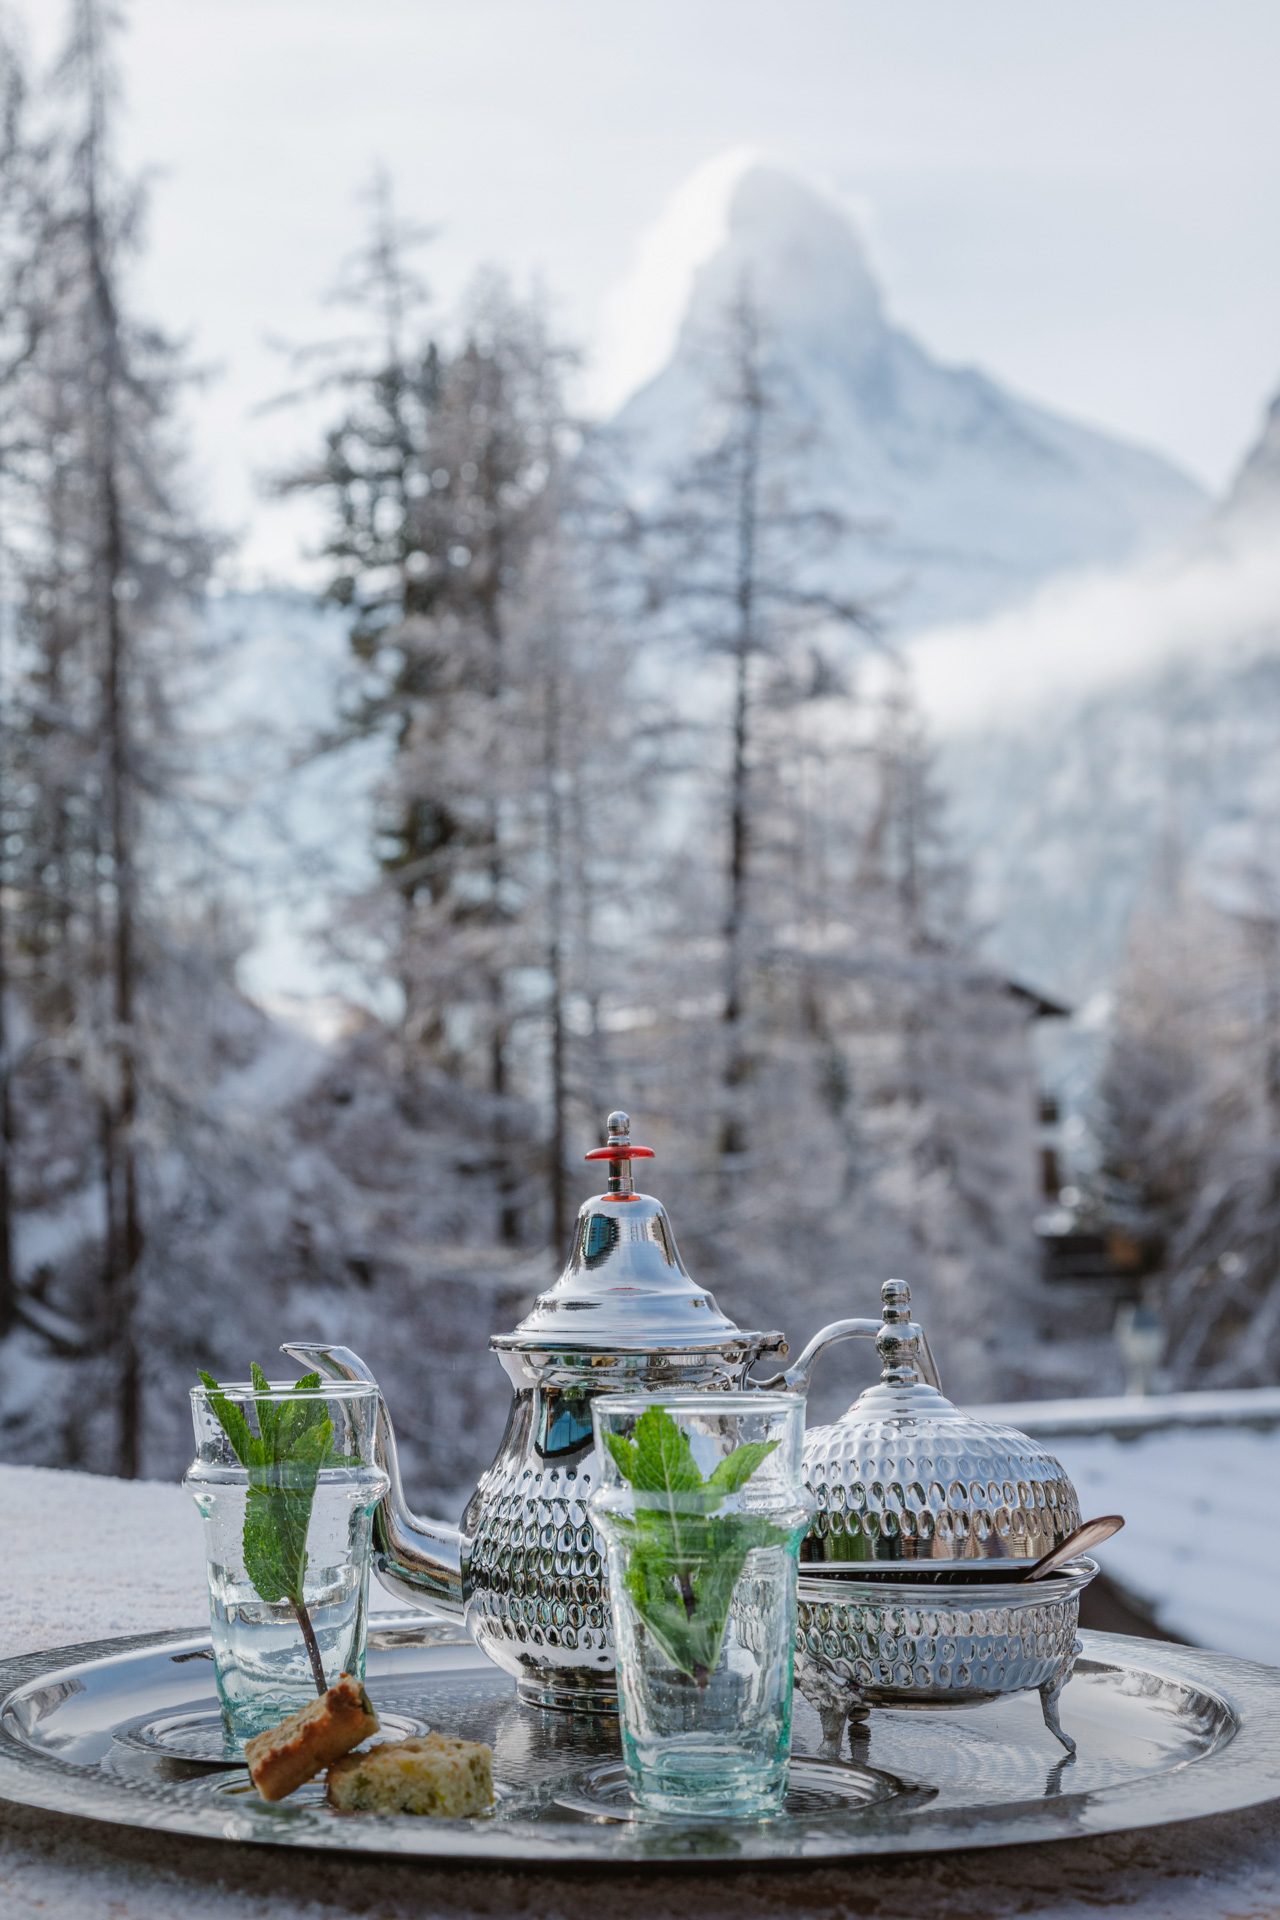 Swiss Deluxe Hotels Stories Winter 2021 A Weekend In Zermatt 03 645A0805 Ecirgb